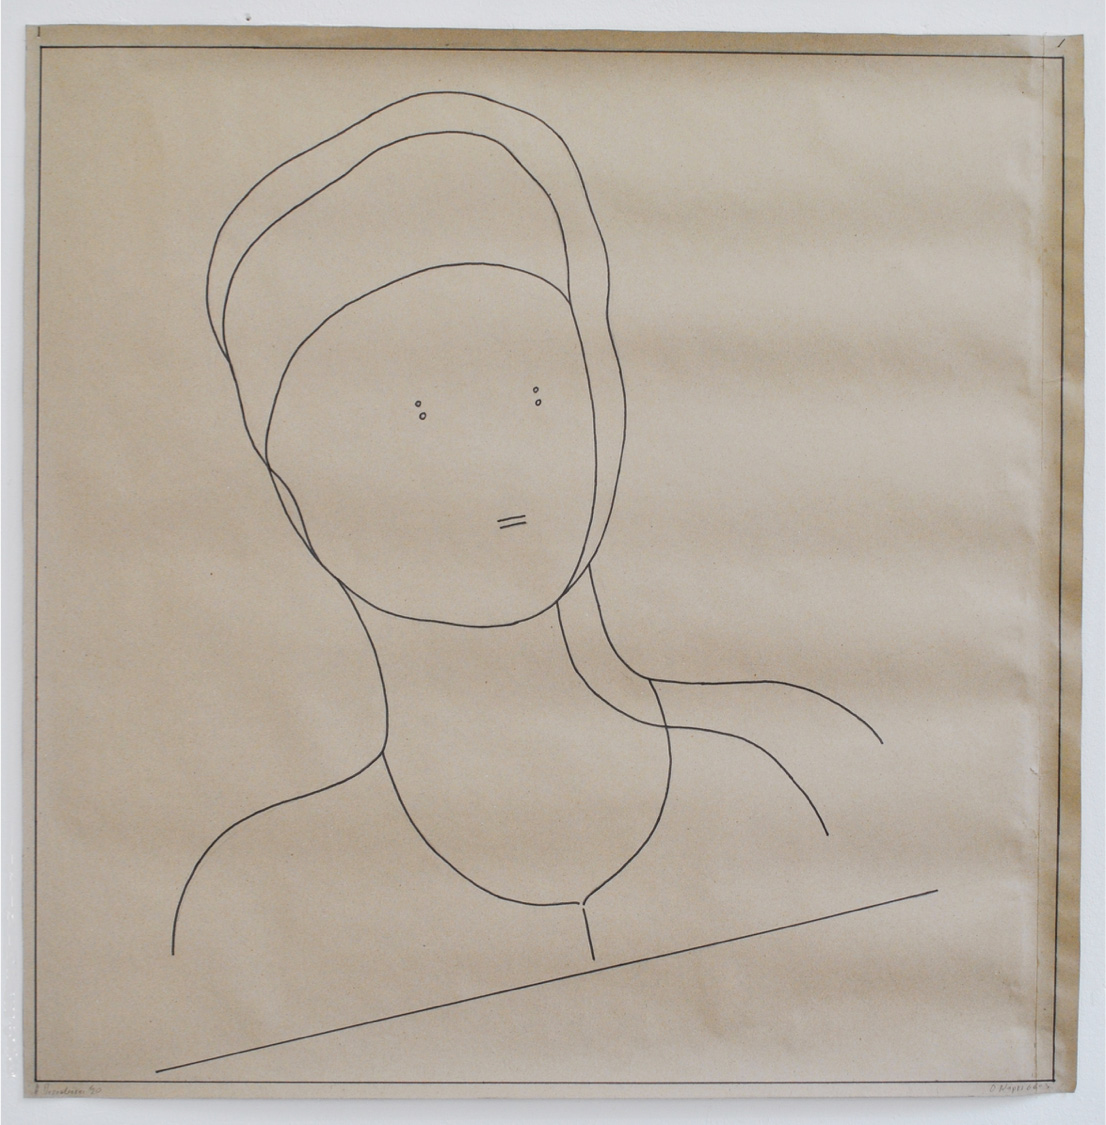 Ilias Papailiakis, Narcissus, Ink on paper, 100x100 cm, 2020